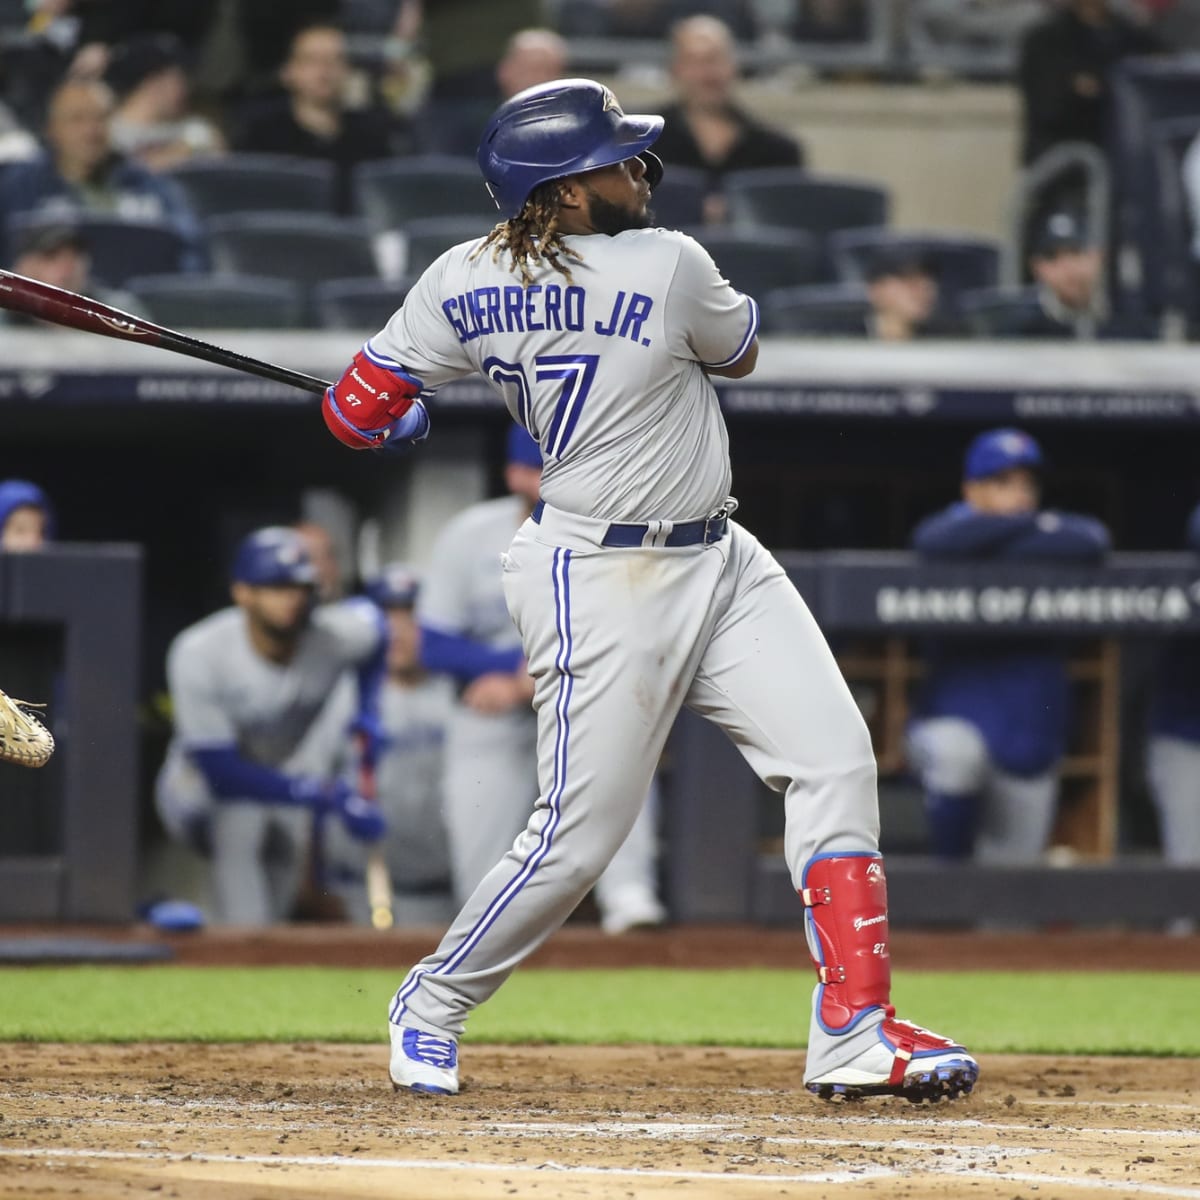 Vladimir Guerrero blasts home run in softball game